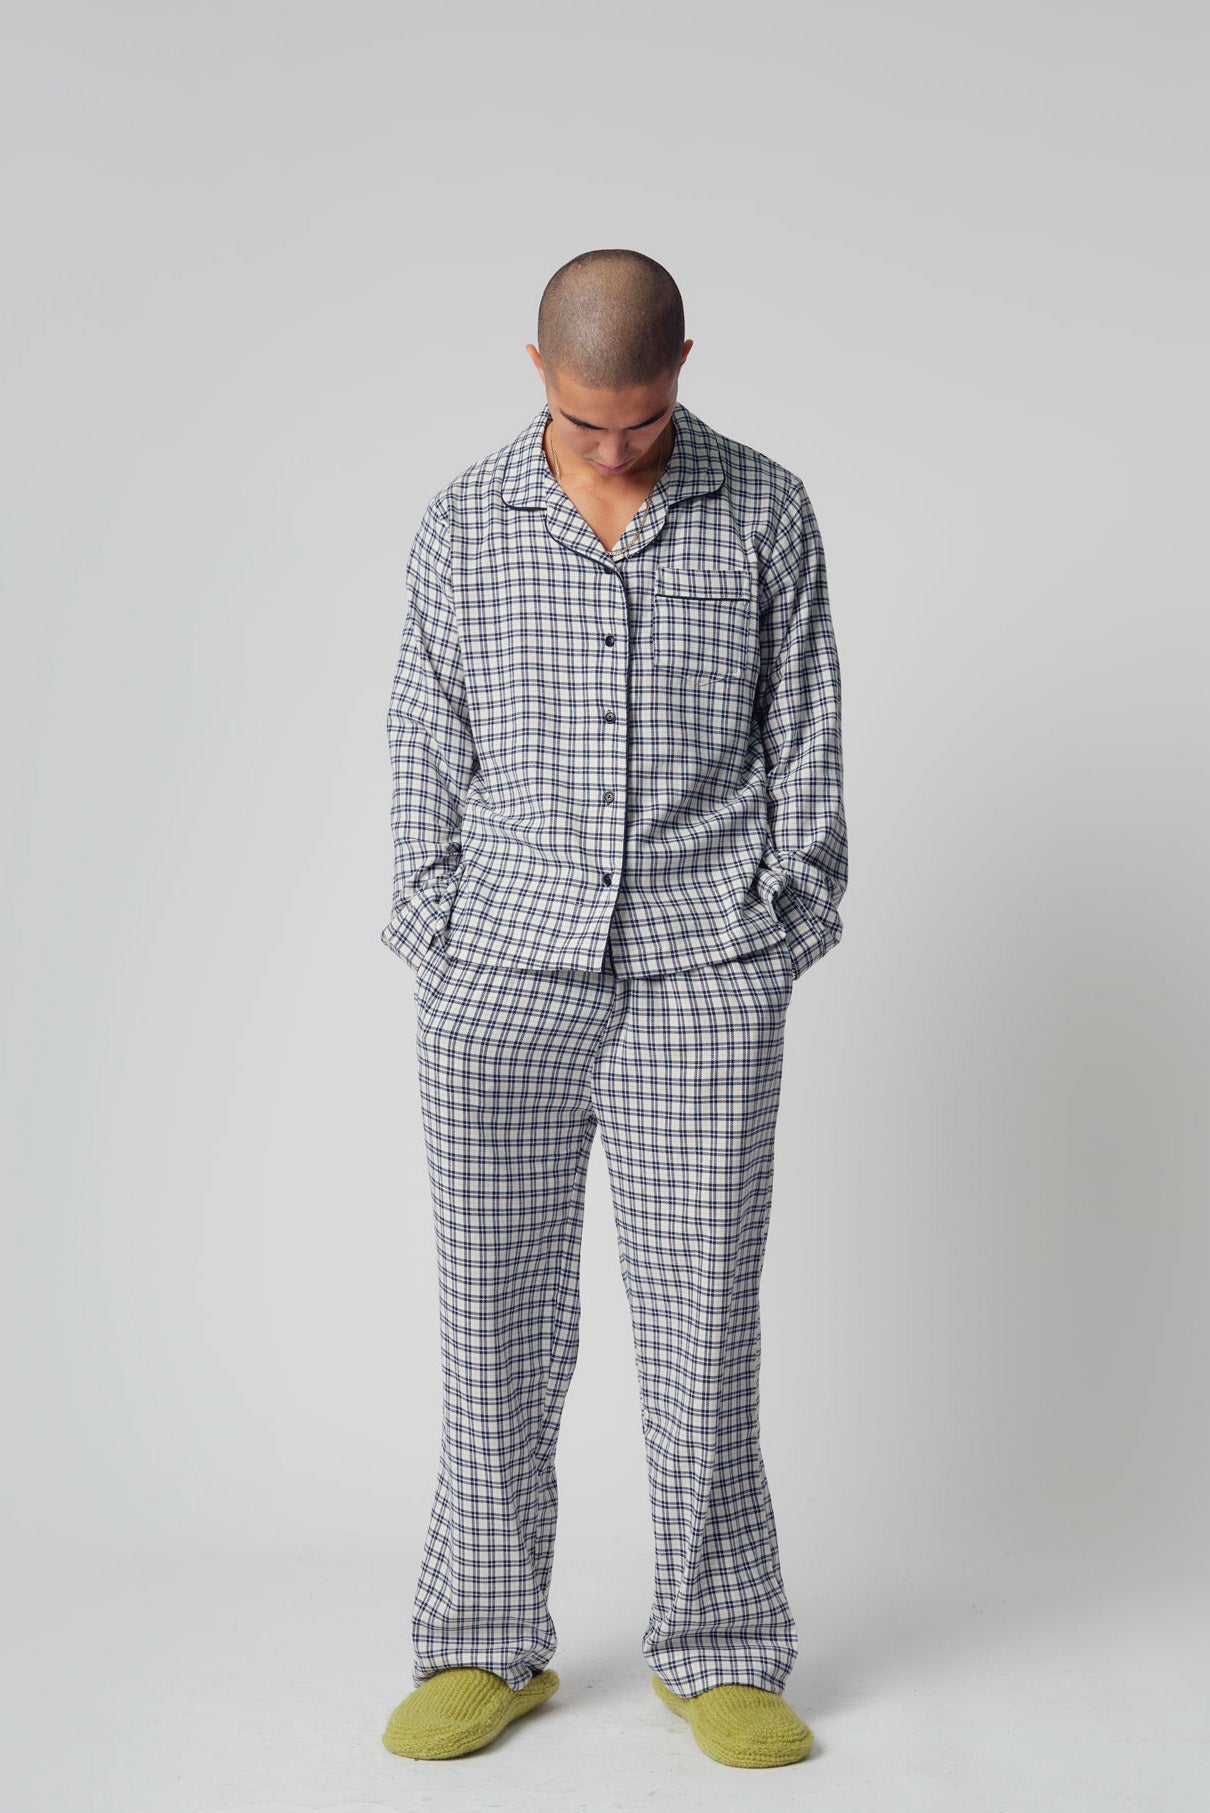 JIM JAM Mens Organic Cotton Pyjama Set White, Small